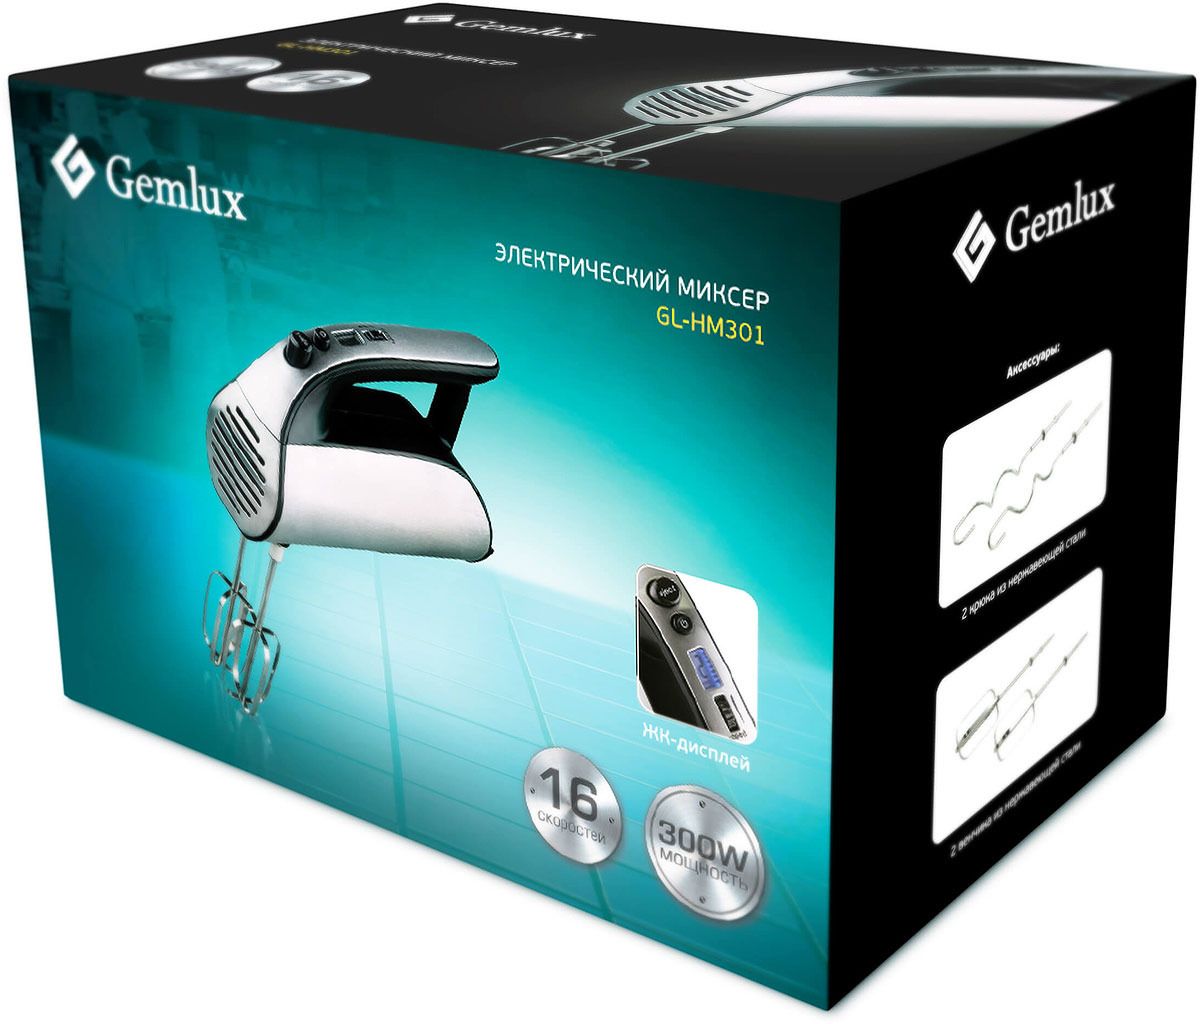   Gemlux GL-HM-301,  